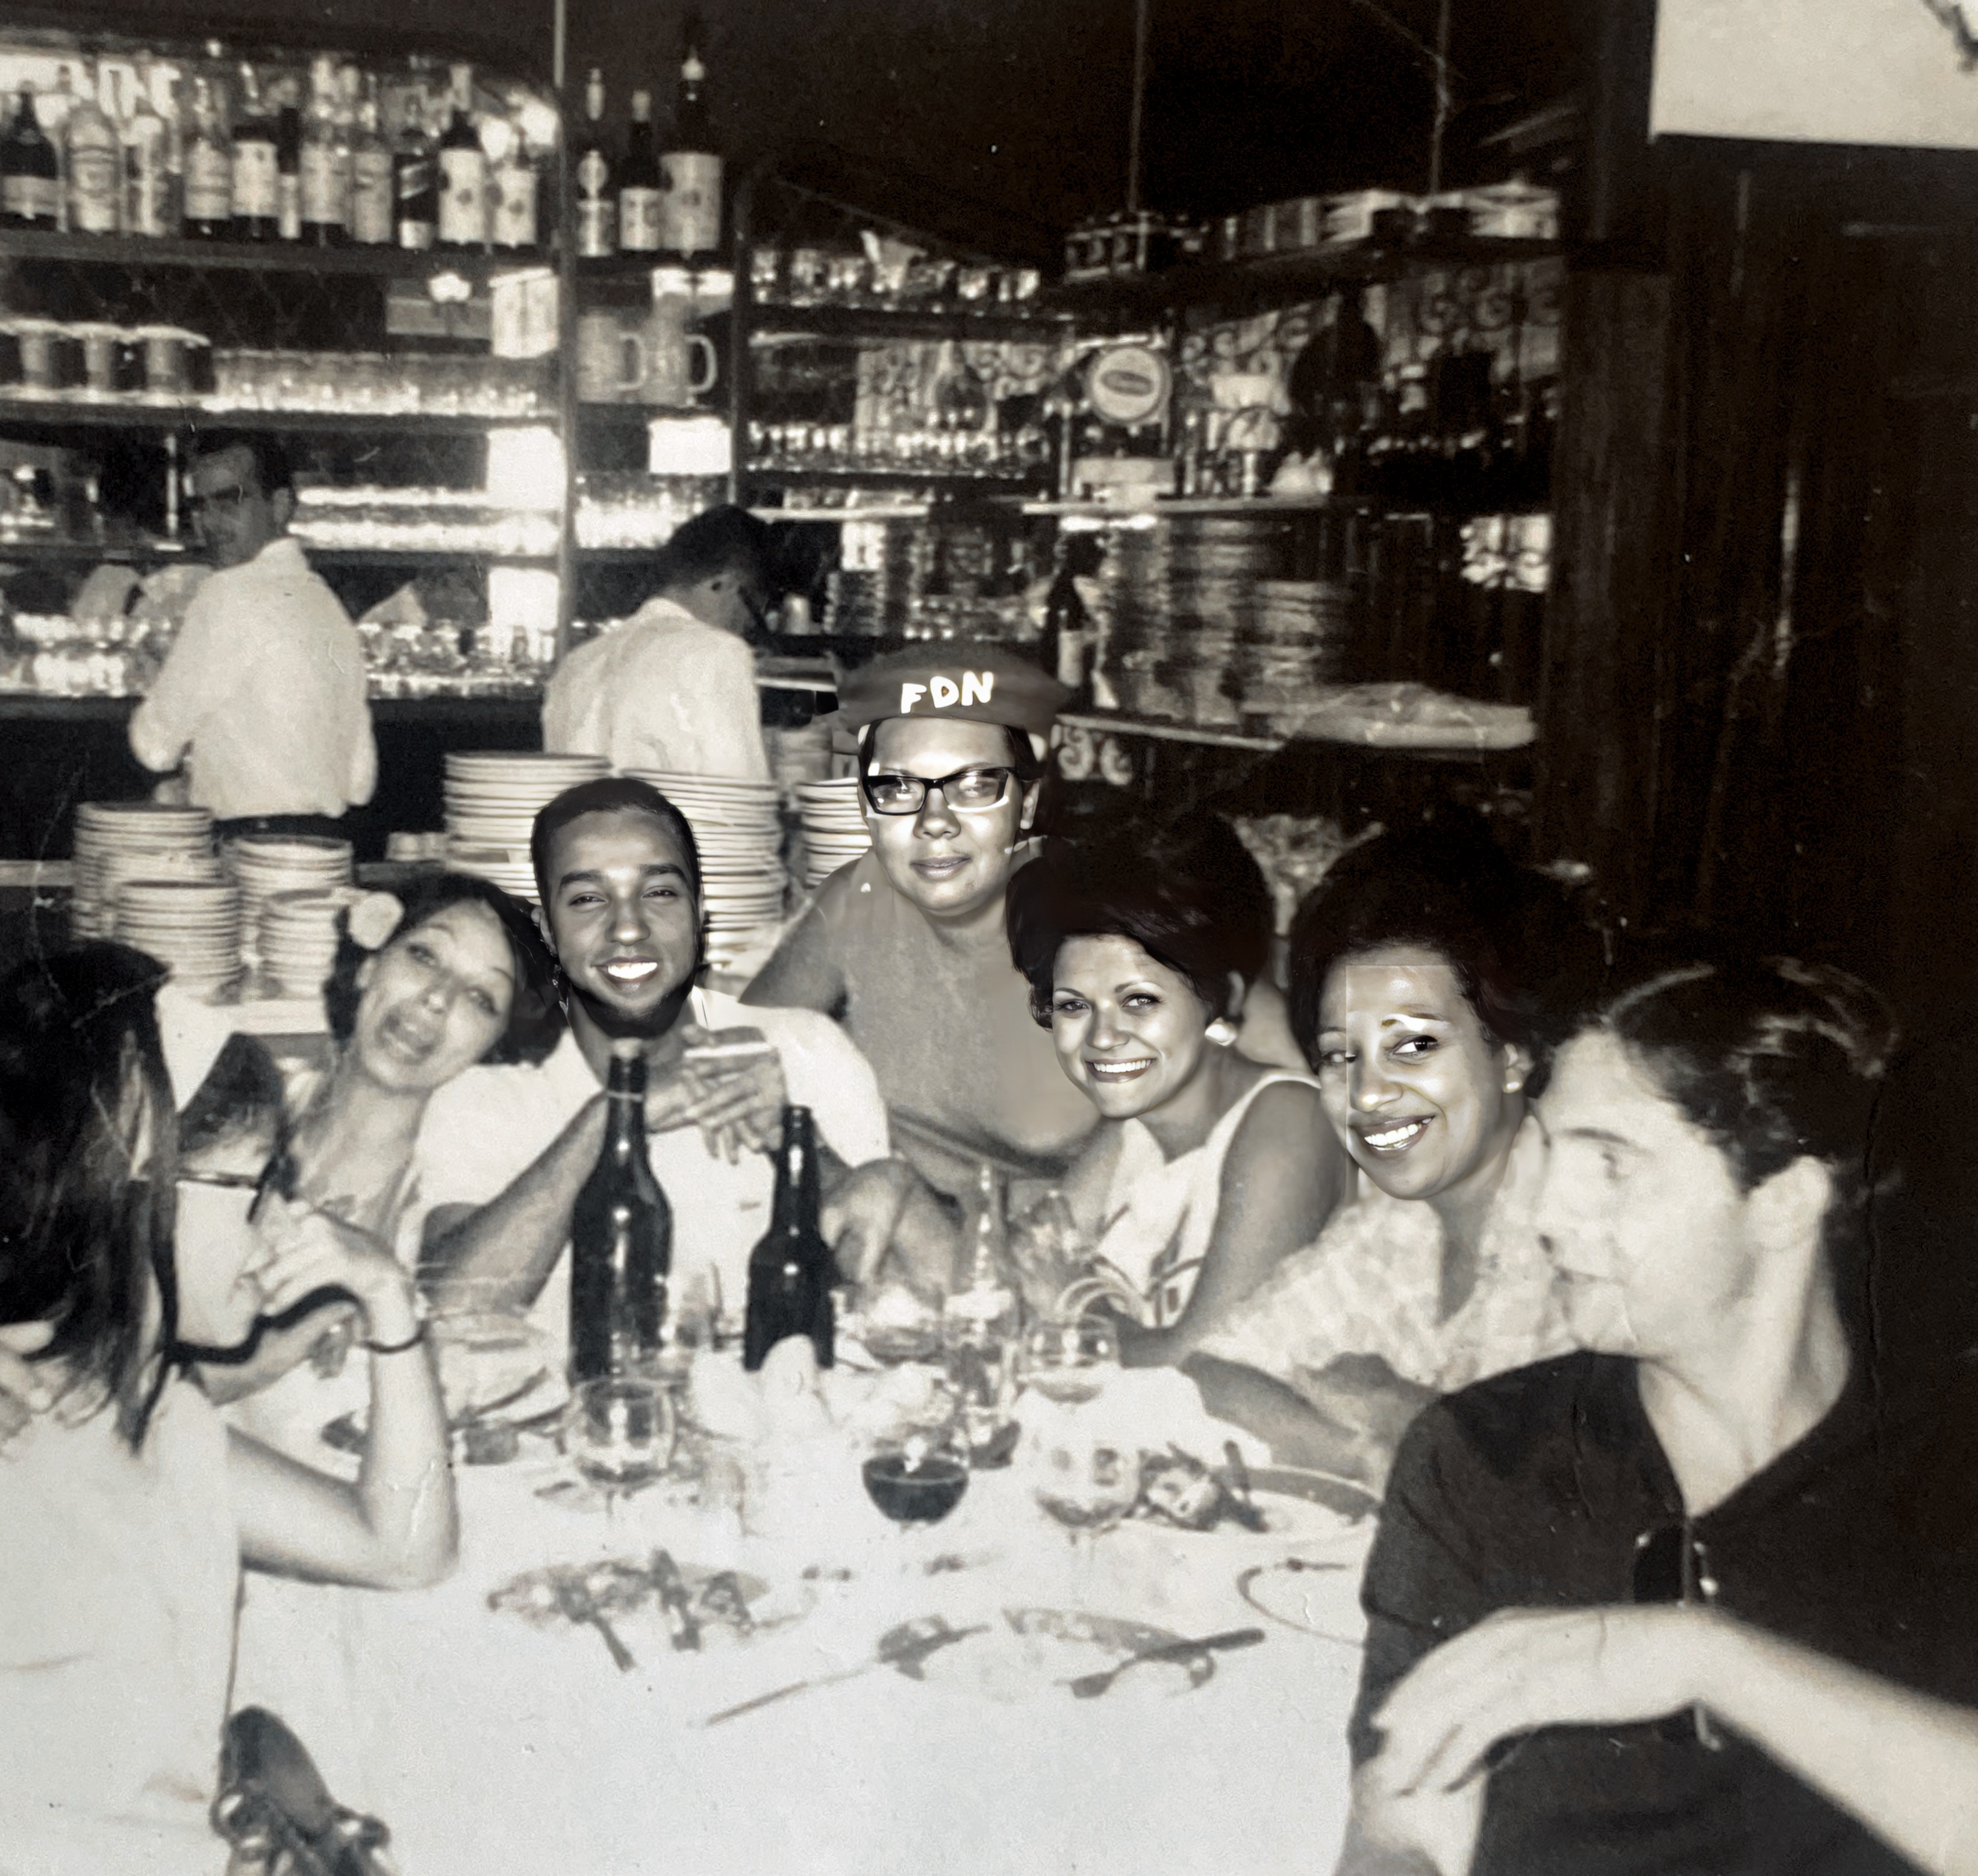 1968 - Comemoração por ter passado na faculdade UERJ. Grupo do Hélio Alonso, vendo-se Prof Carrão e a irmã da Lucia- Maria Julia